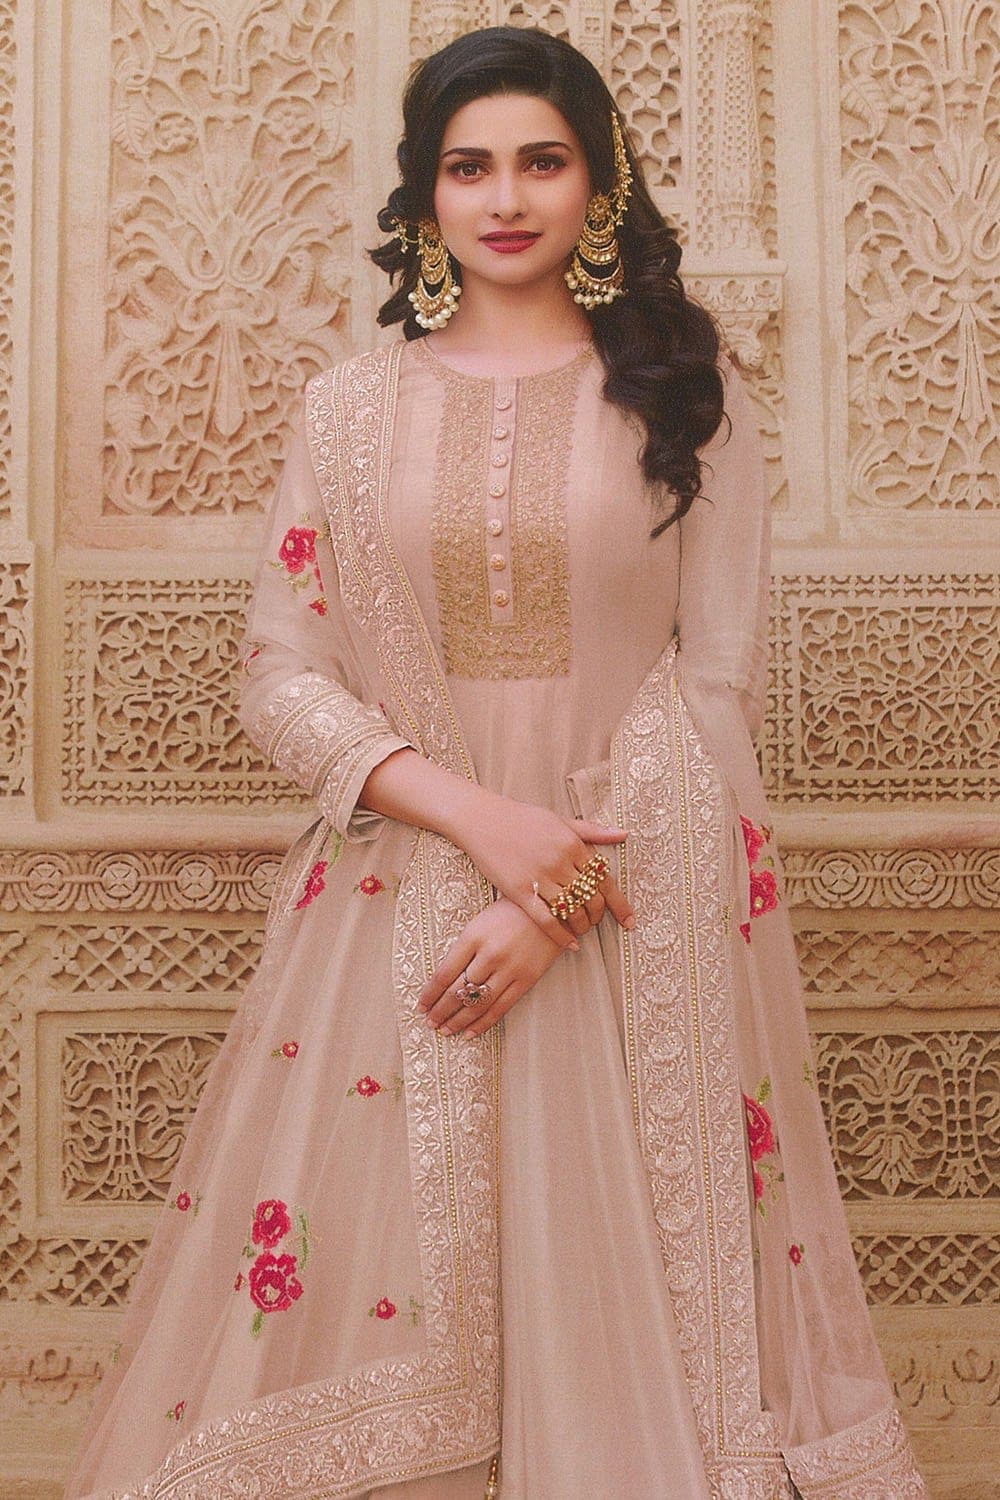 Madhuri Dixit Inspired Exquisite Saree Looks For Bong Wedding | Madhuri  dixit, Saree look, Stylish sarees